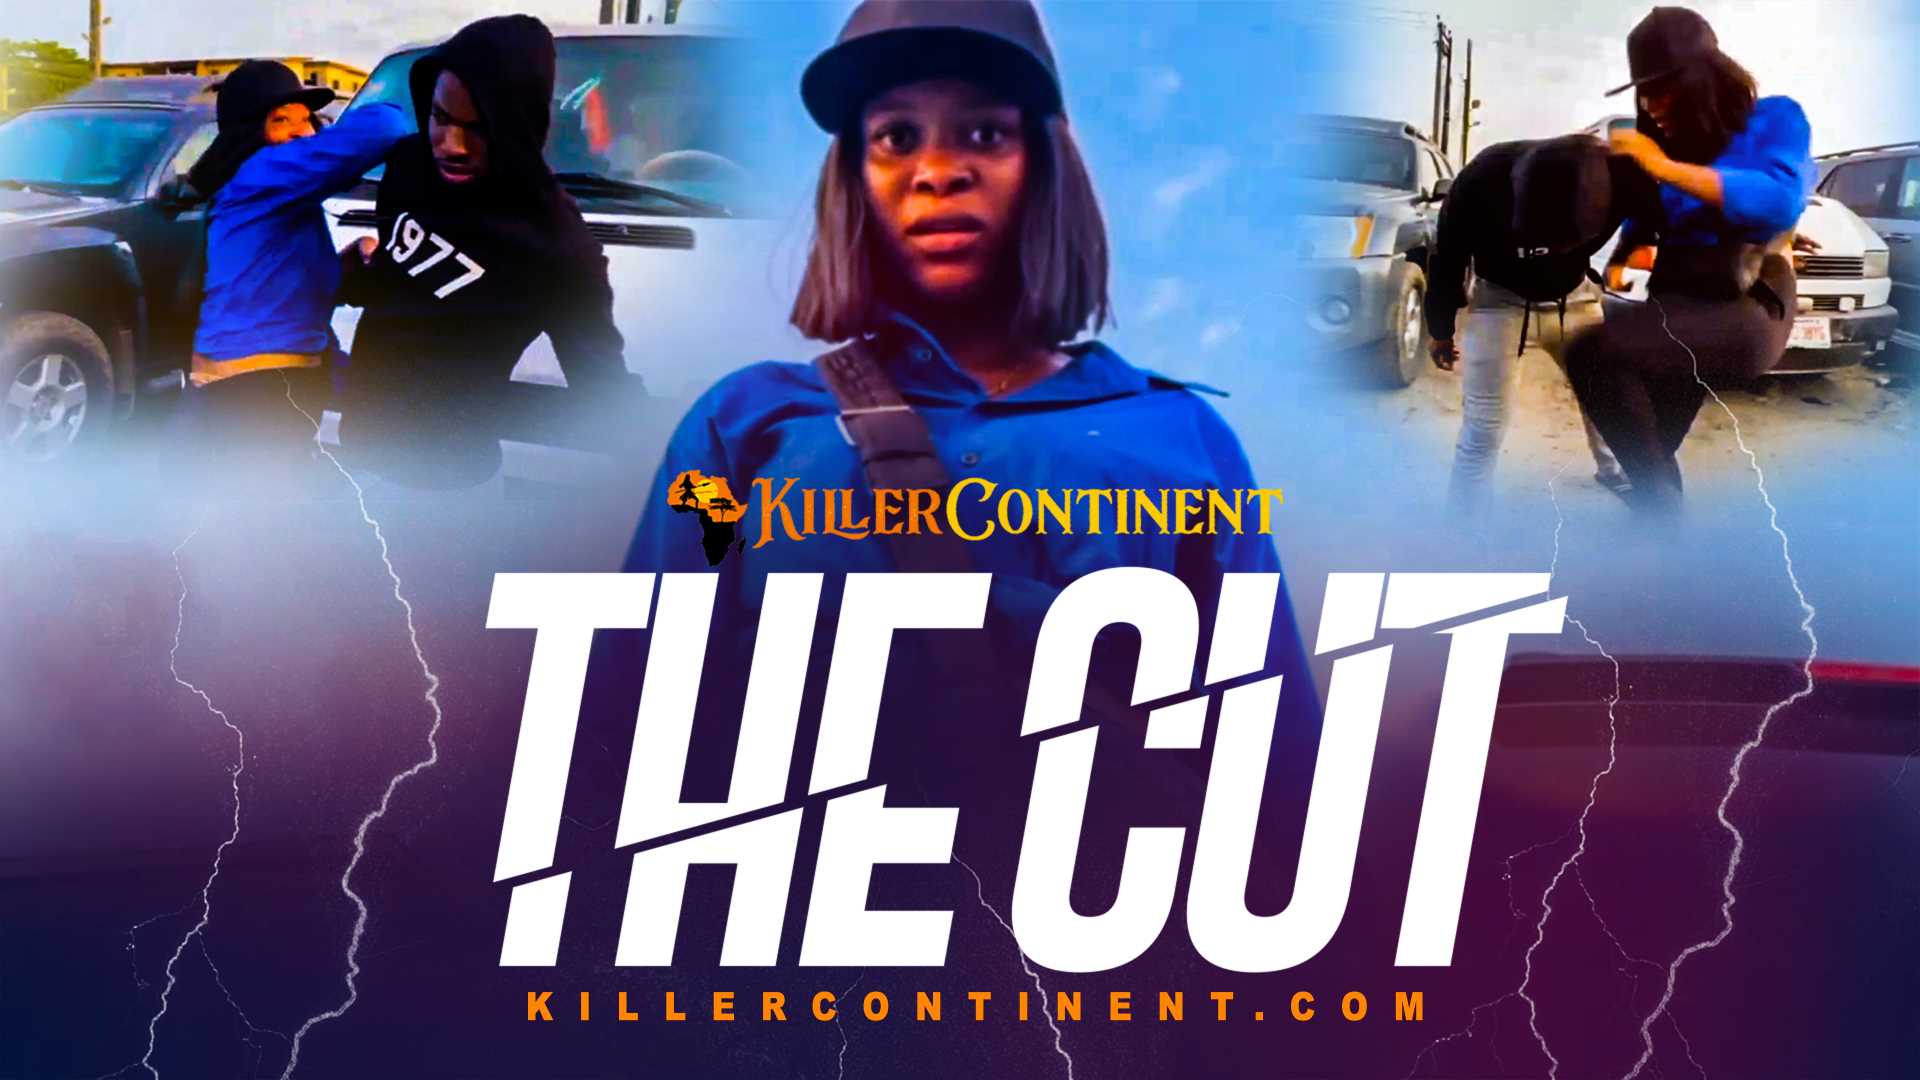 KillerContinent | Killer Continent | THE CUT